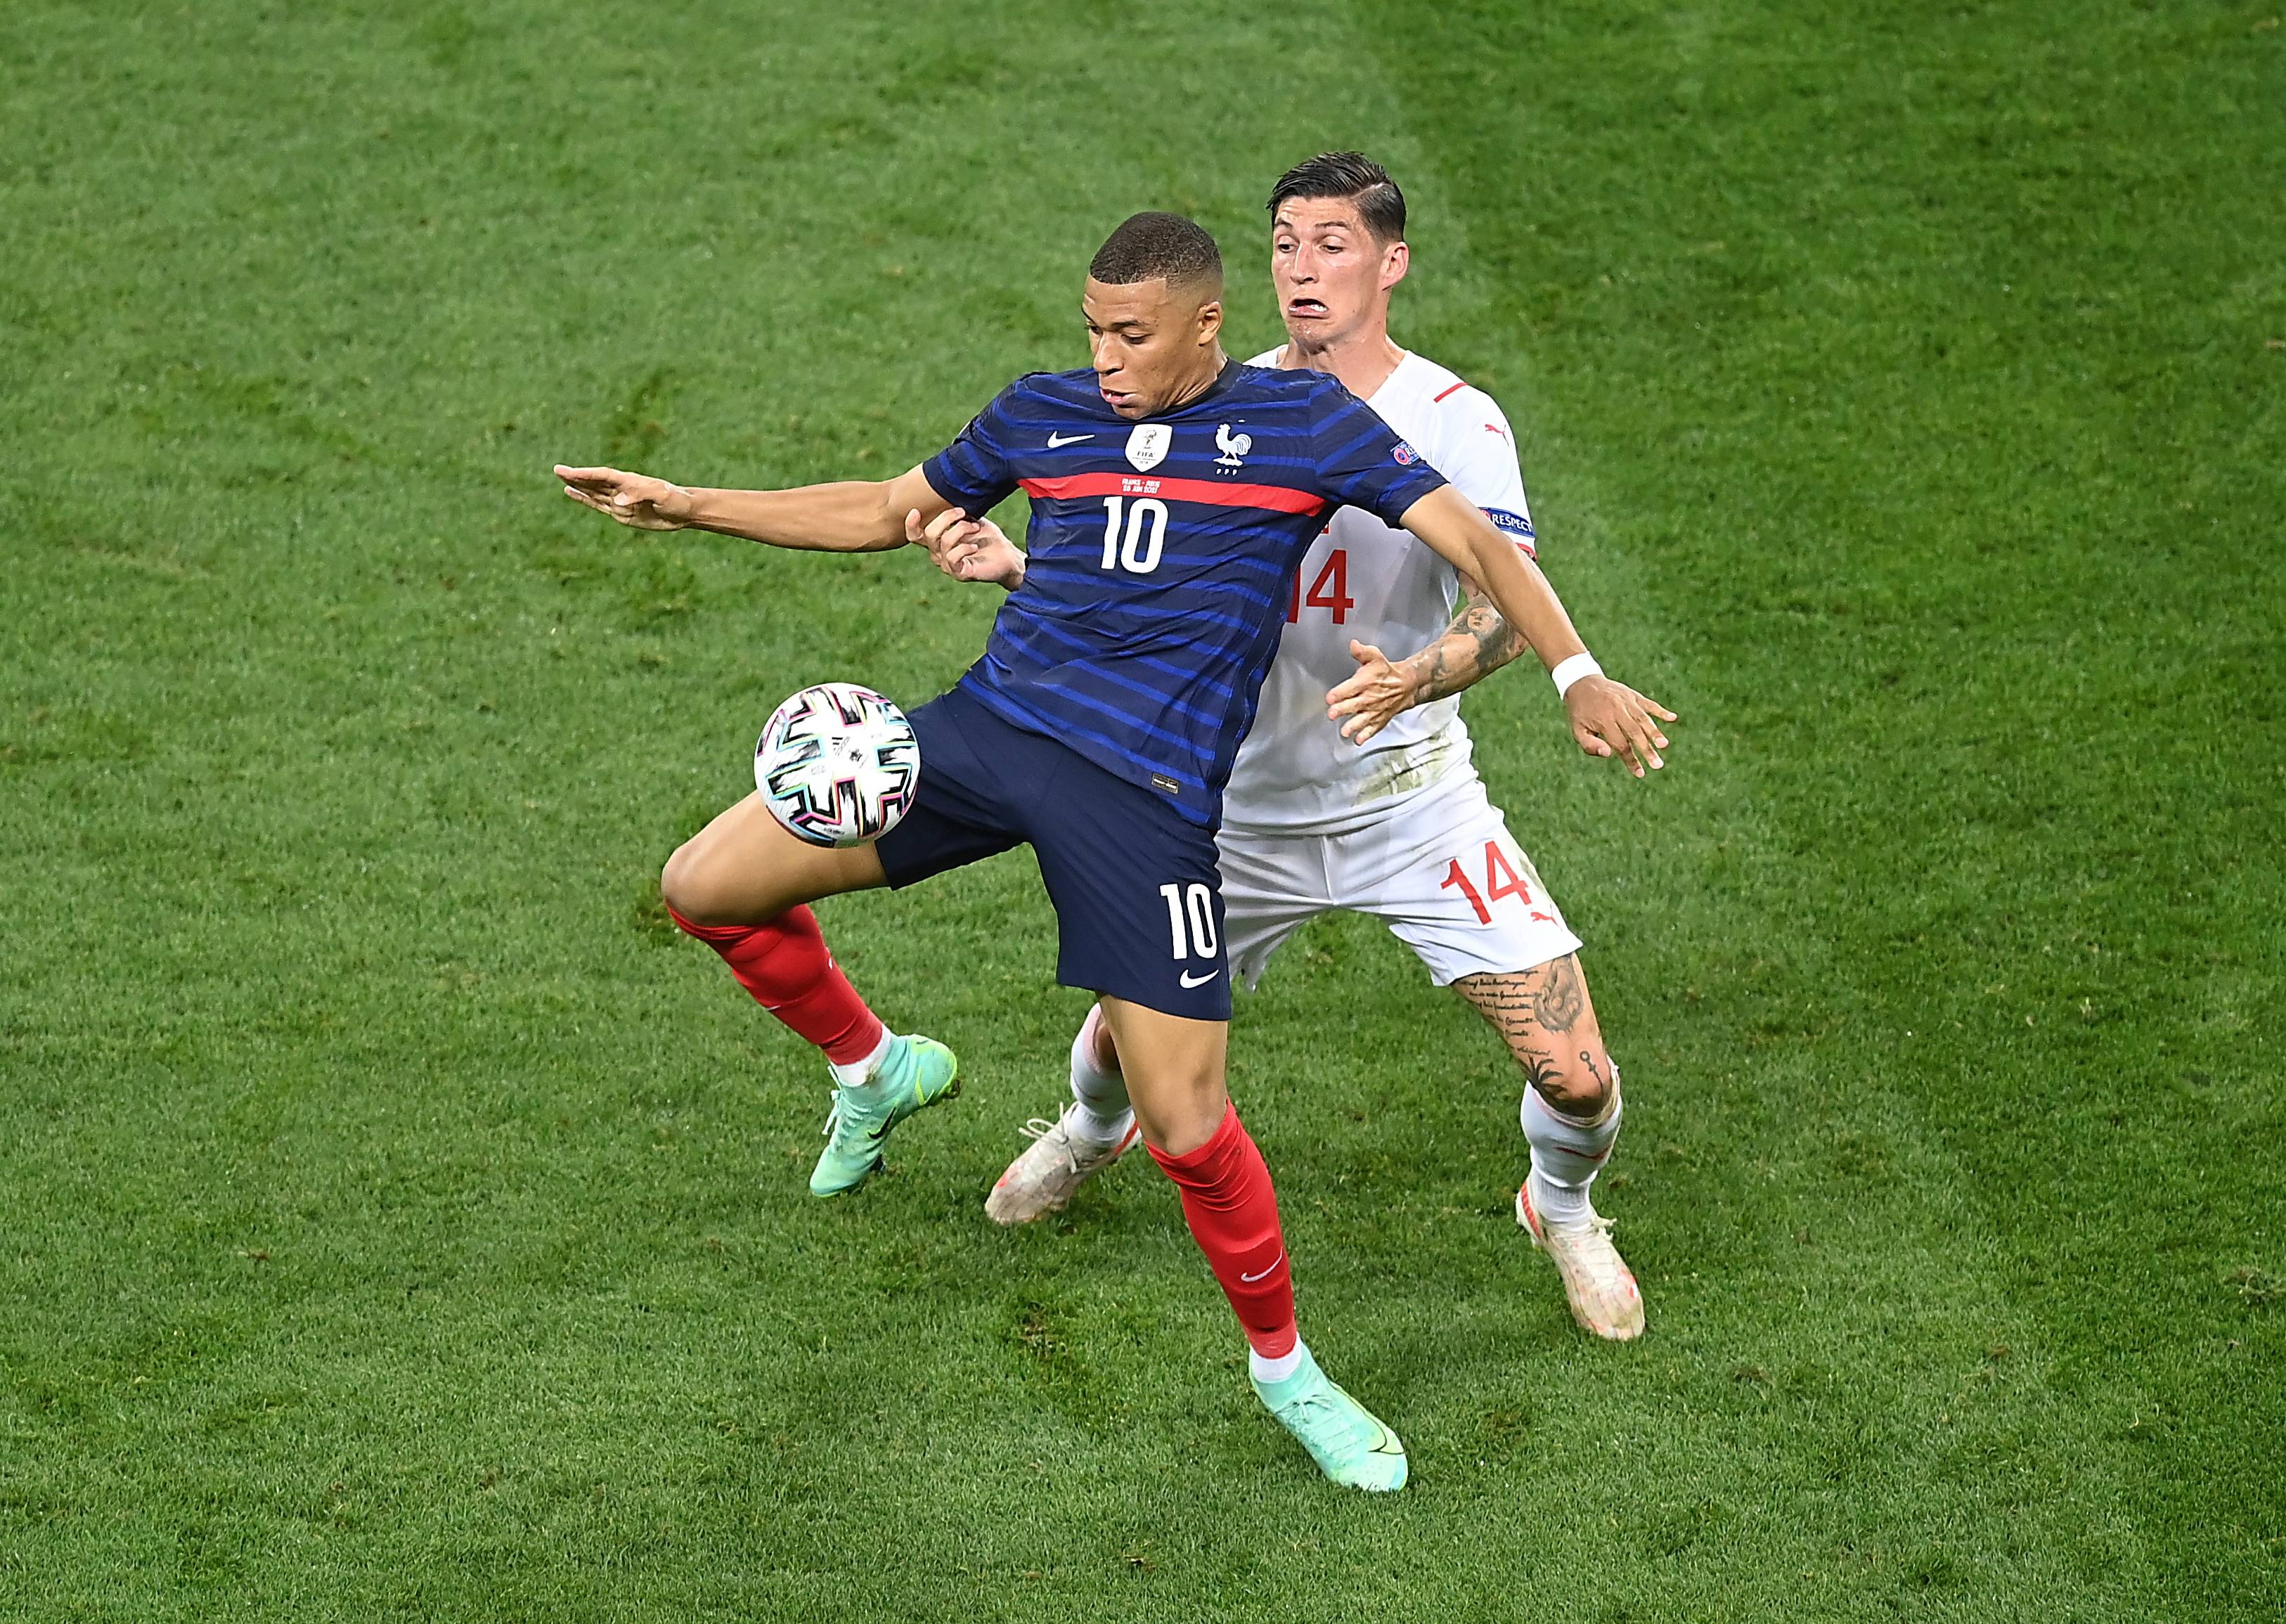 6月28日,瑞士队球员祖贝尔(右)与法国队球员姆巴佩拼抢